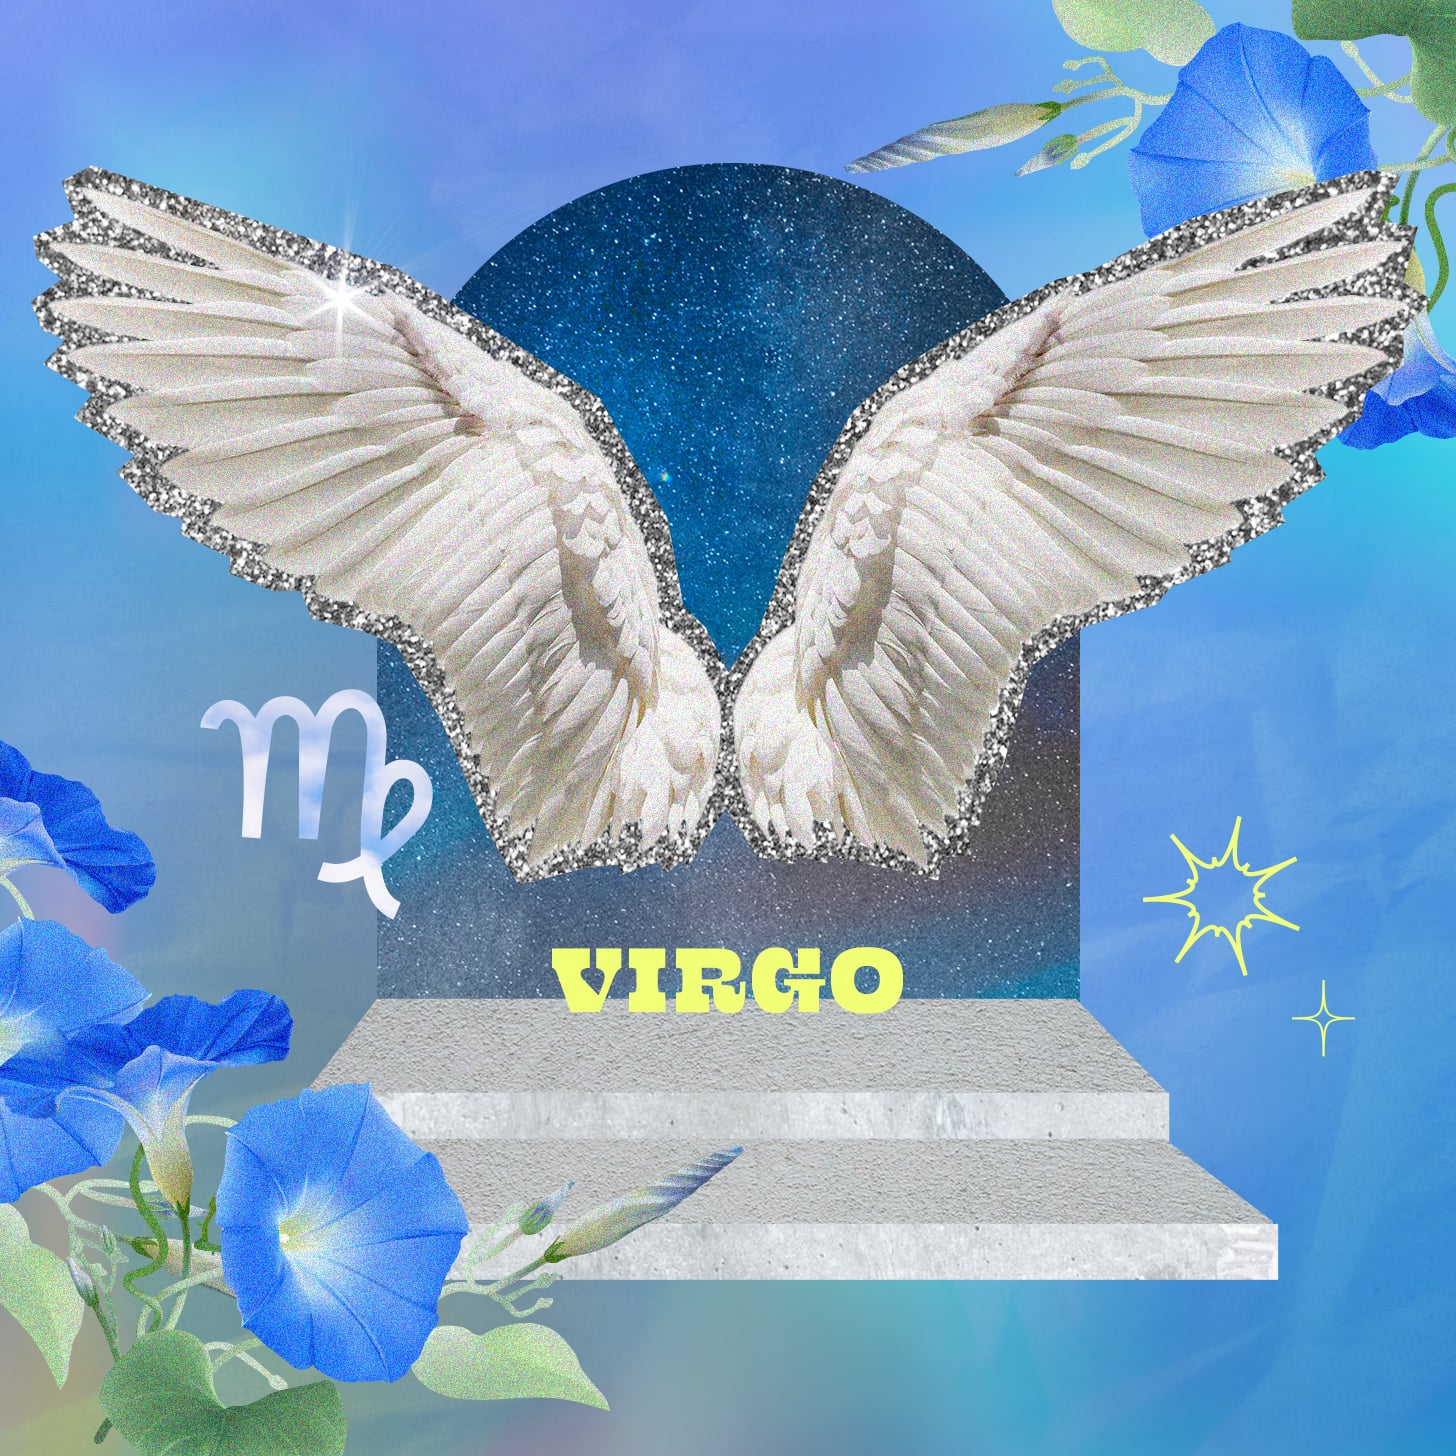 Virgo weekly horoscope for September 11, 2022